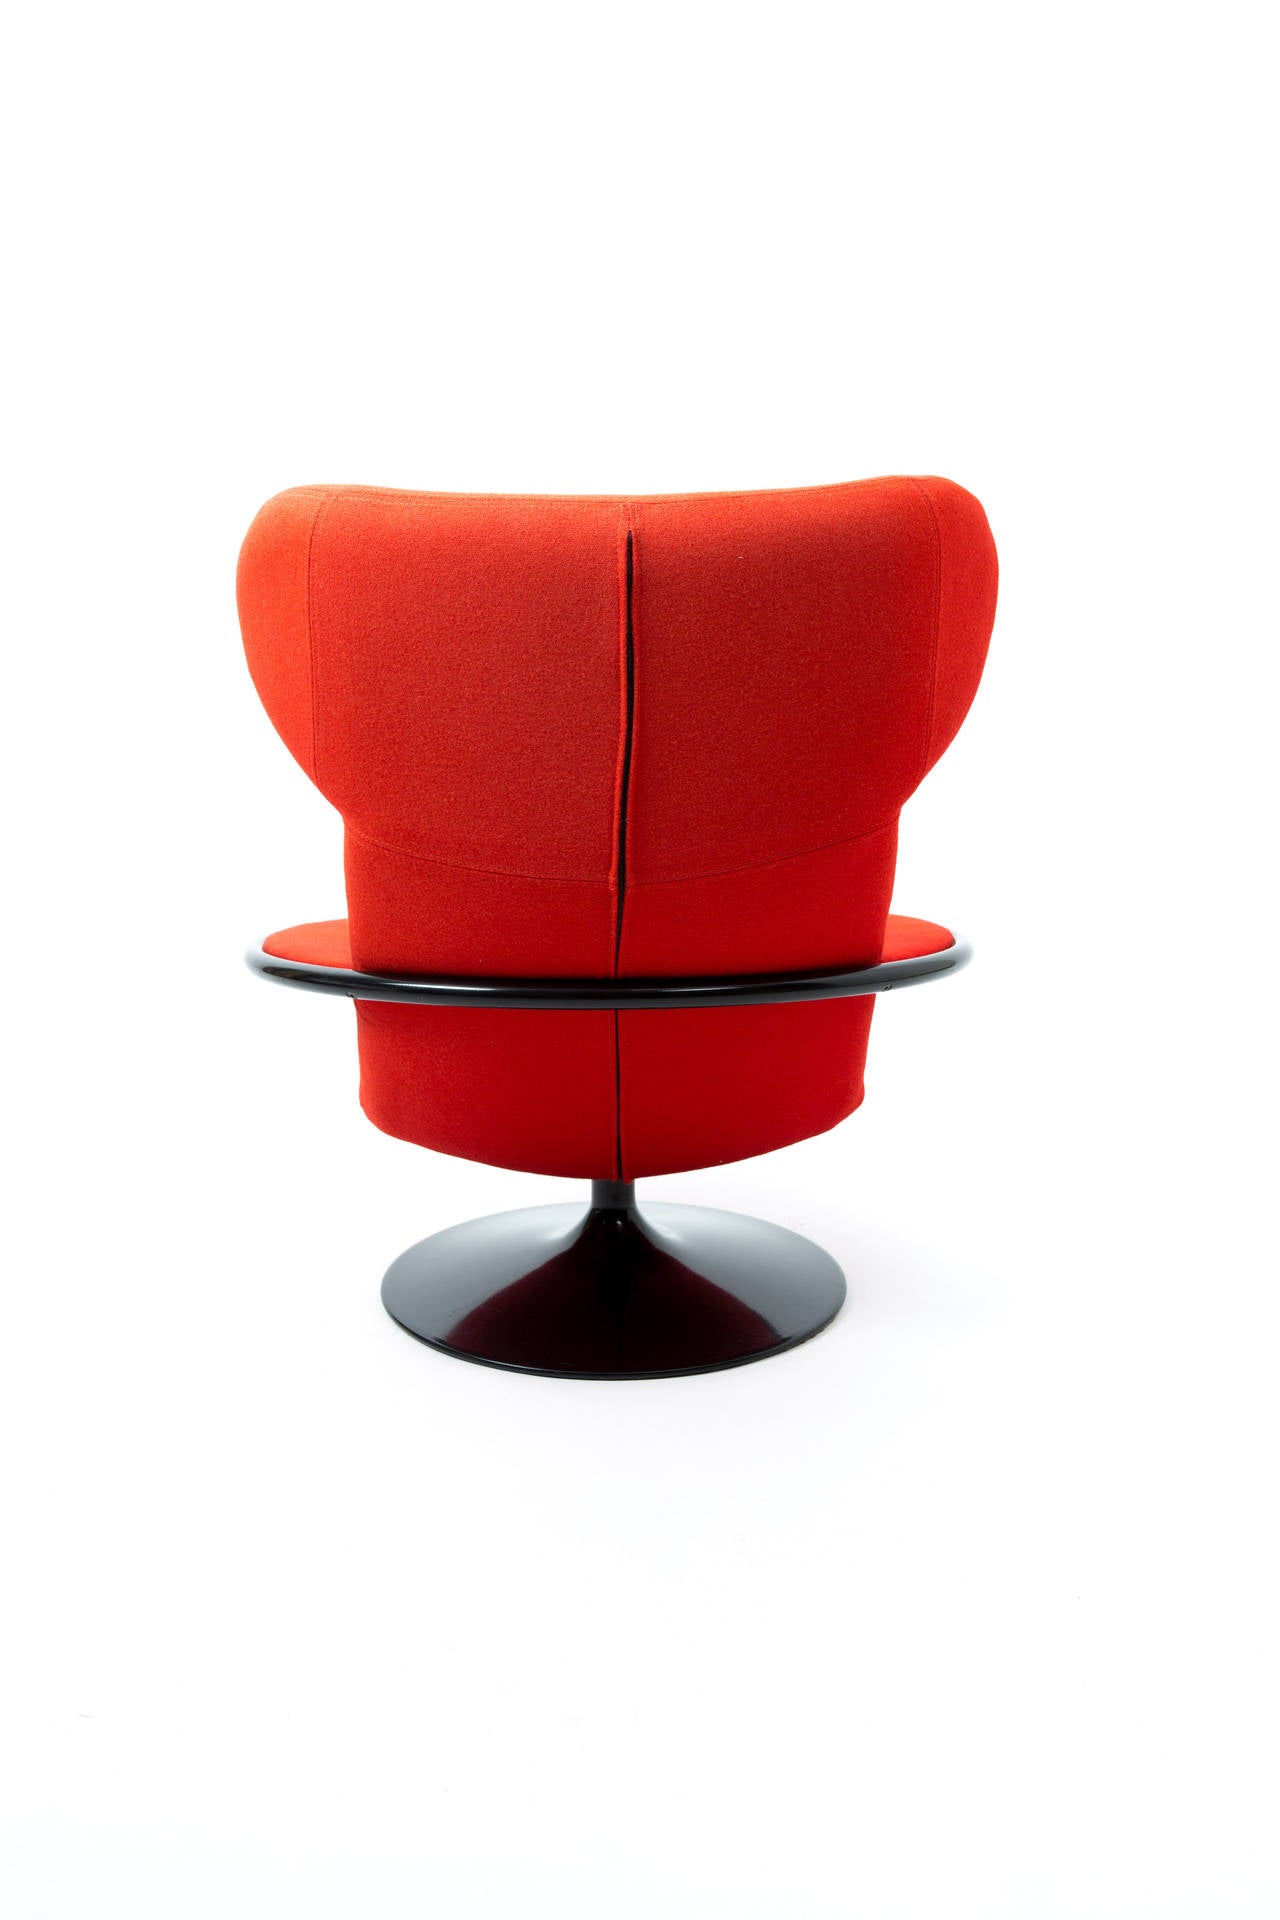 Artifort Dutch Design Geoffrey Harcourt Lounge Chair 1